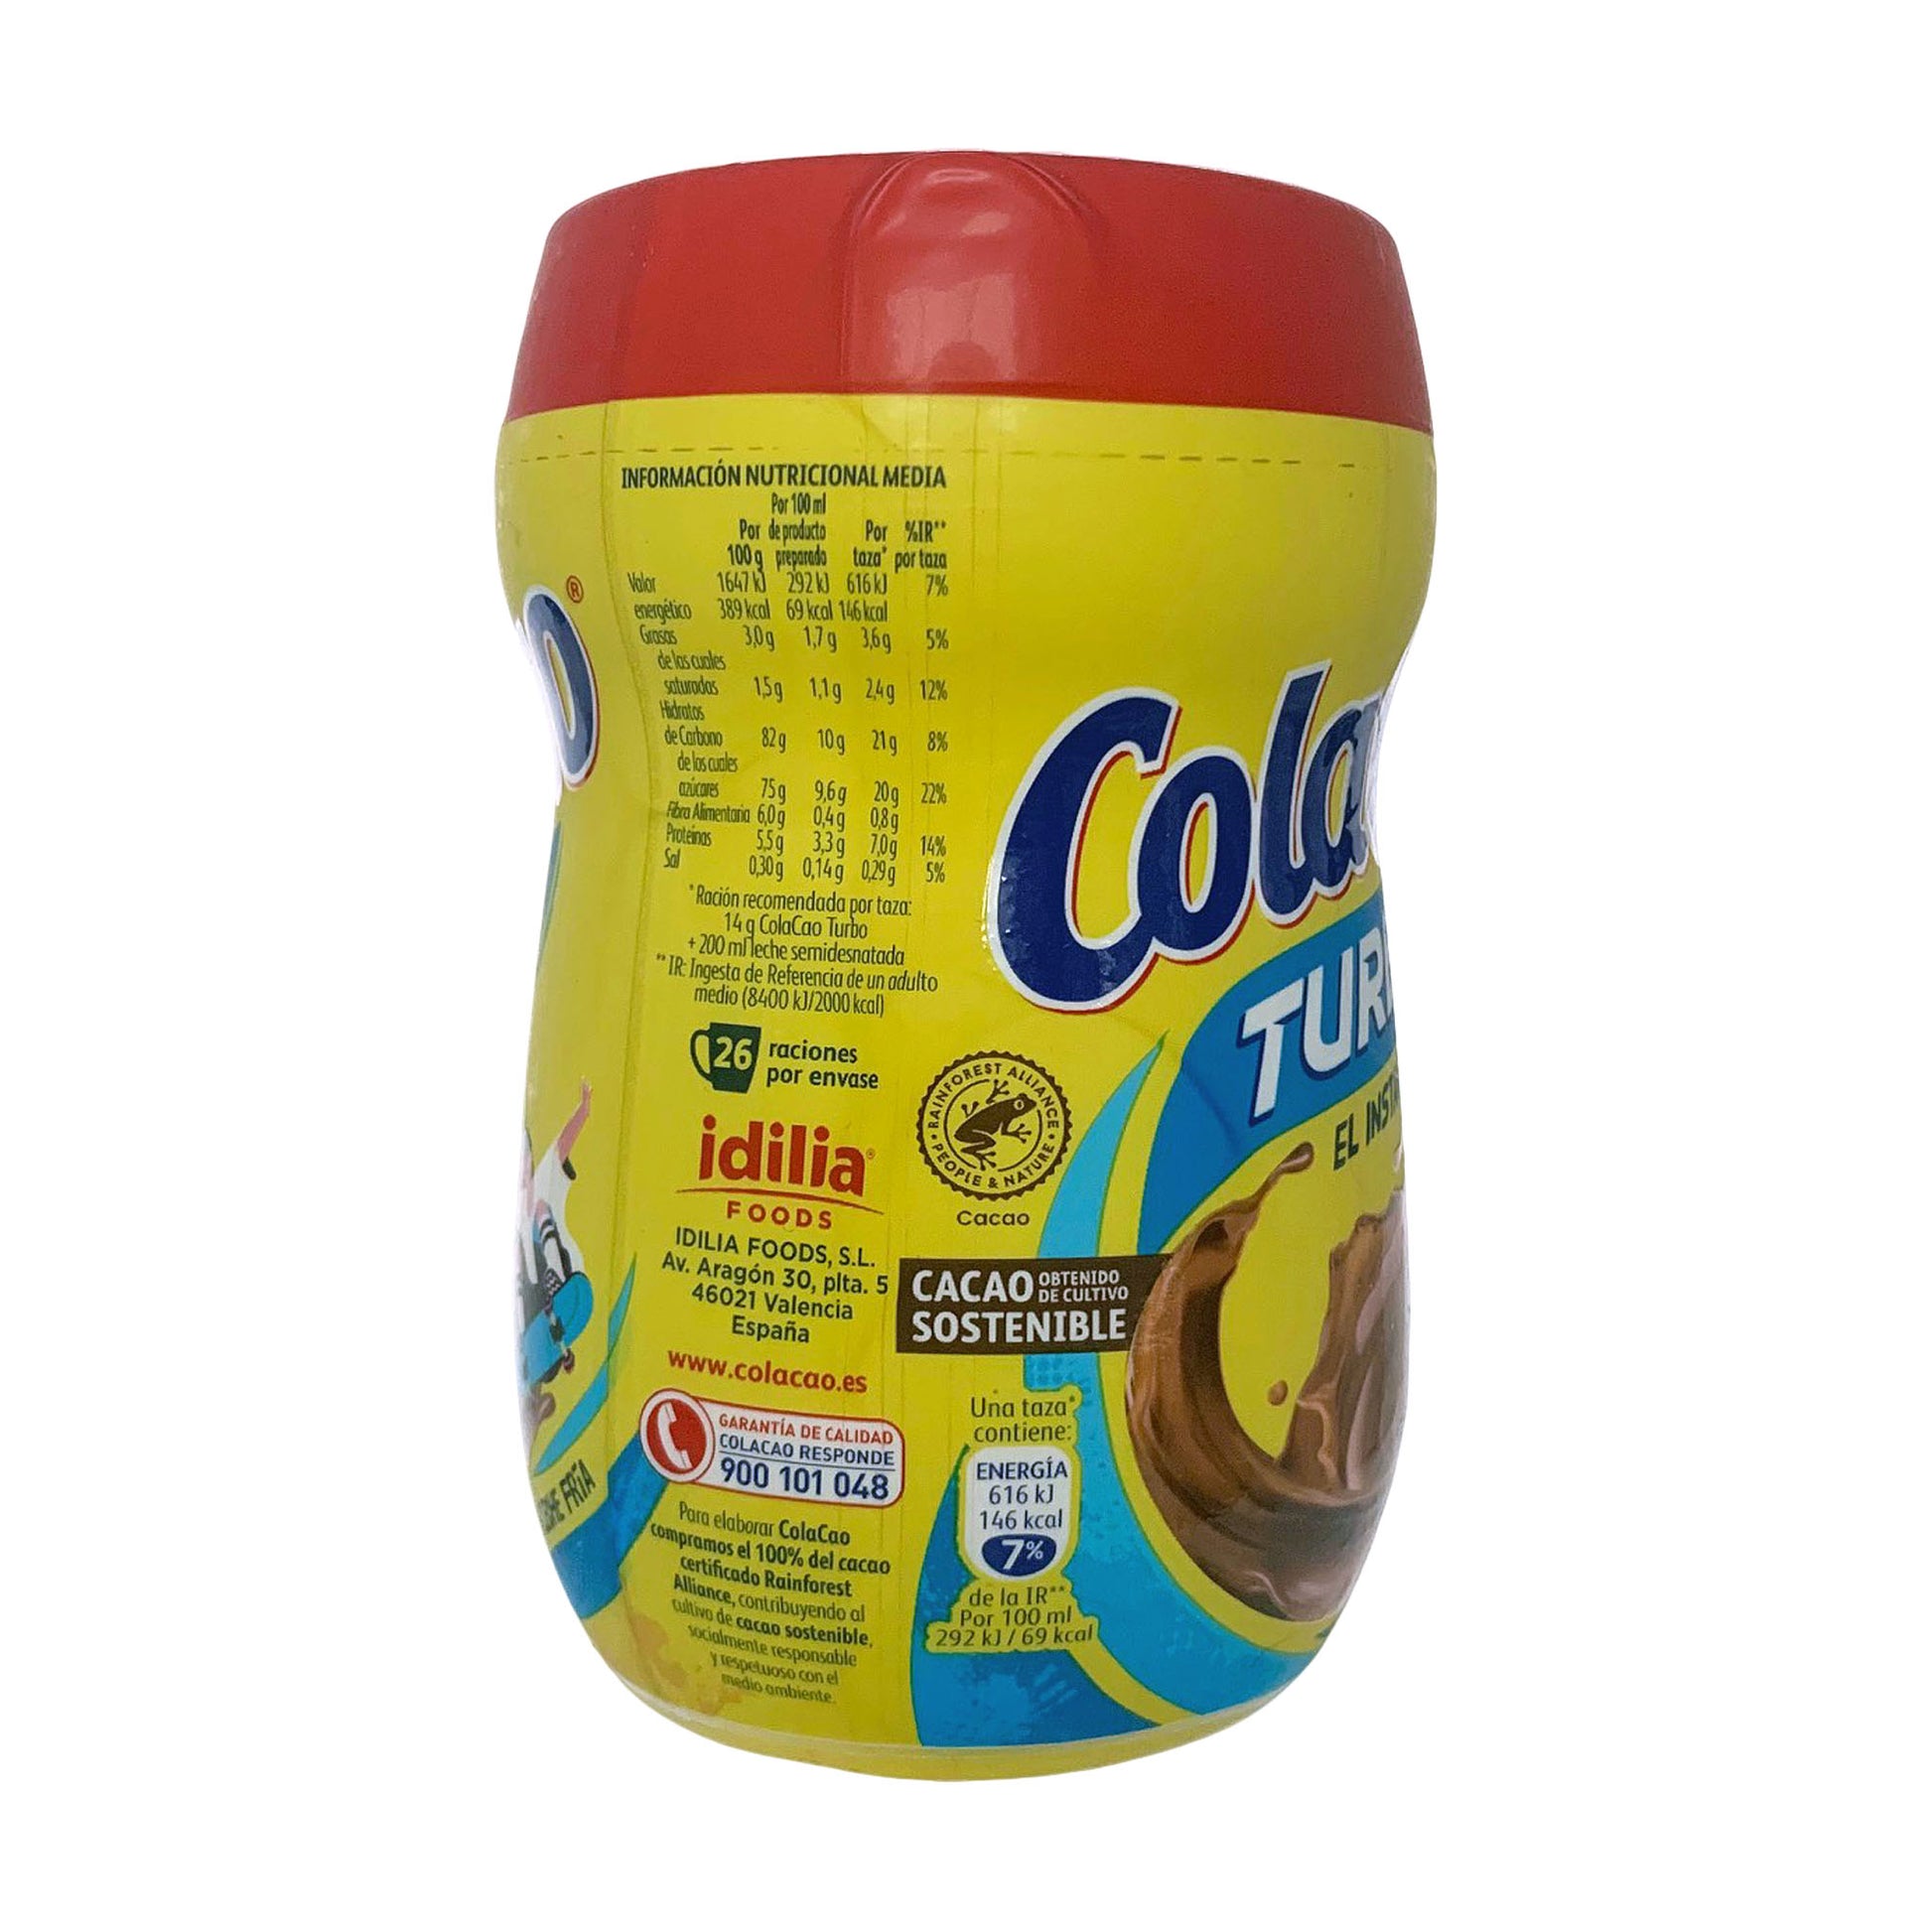 Cola Cao Kakaový nápoj Turbo 400g